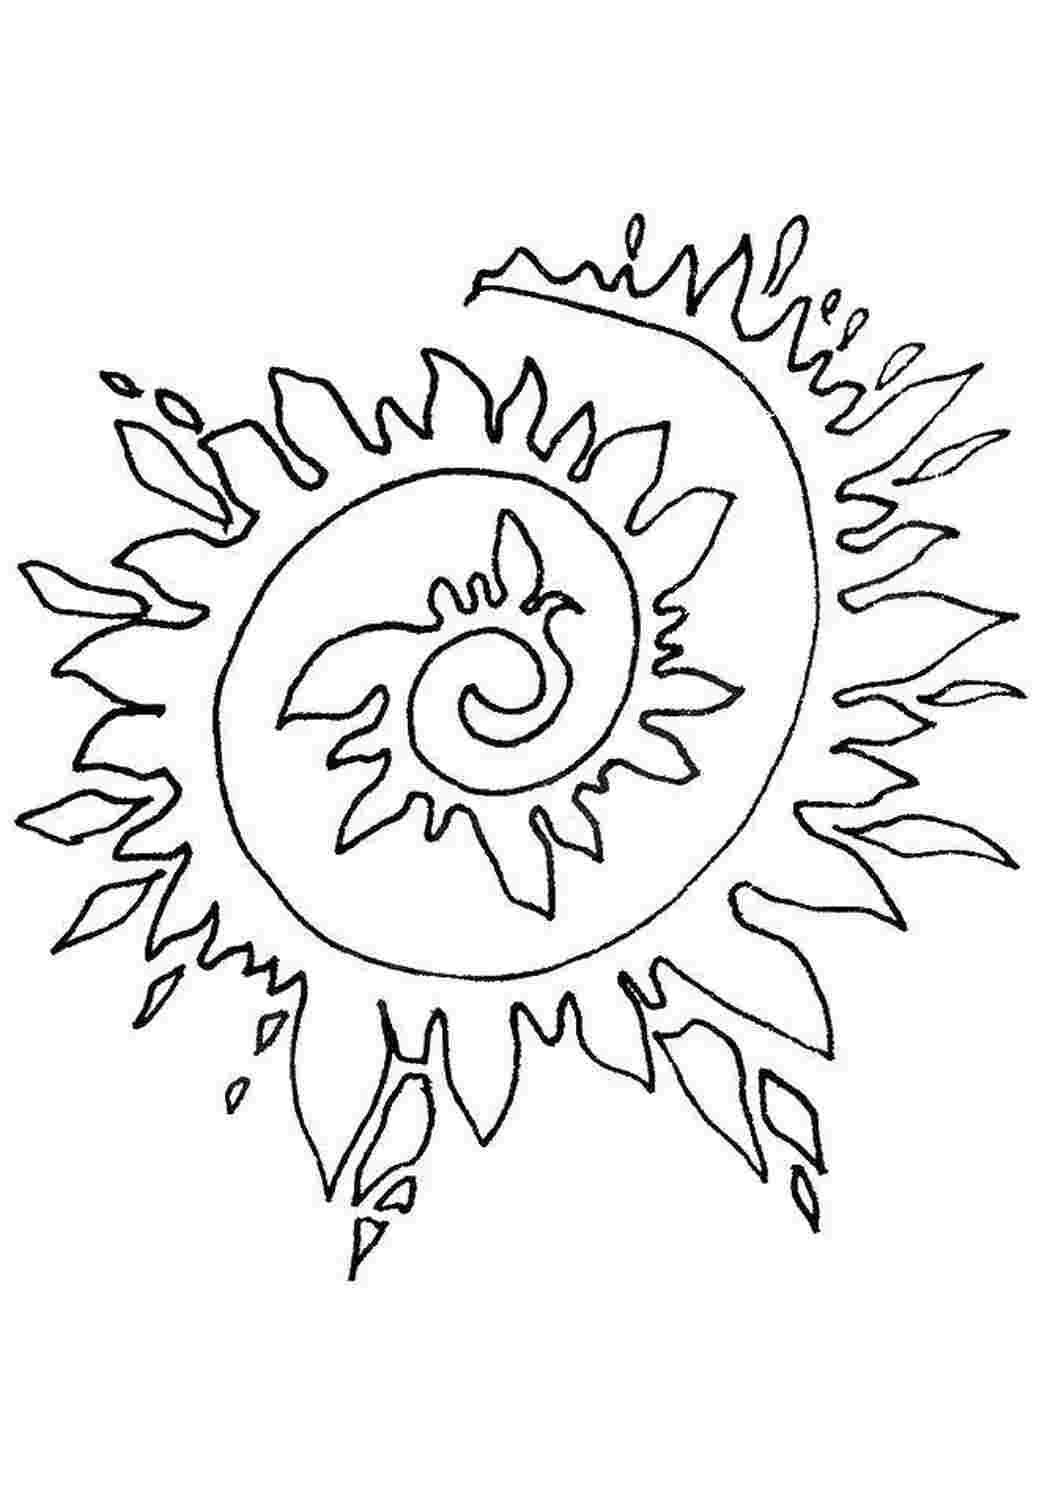 Рисование по шаблону солнце